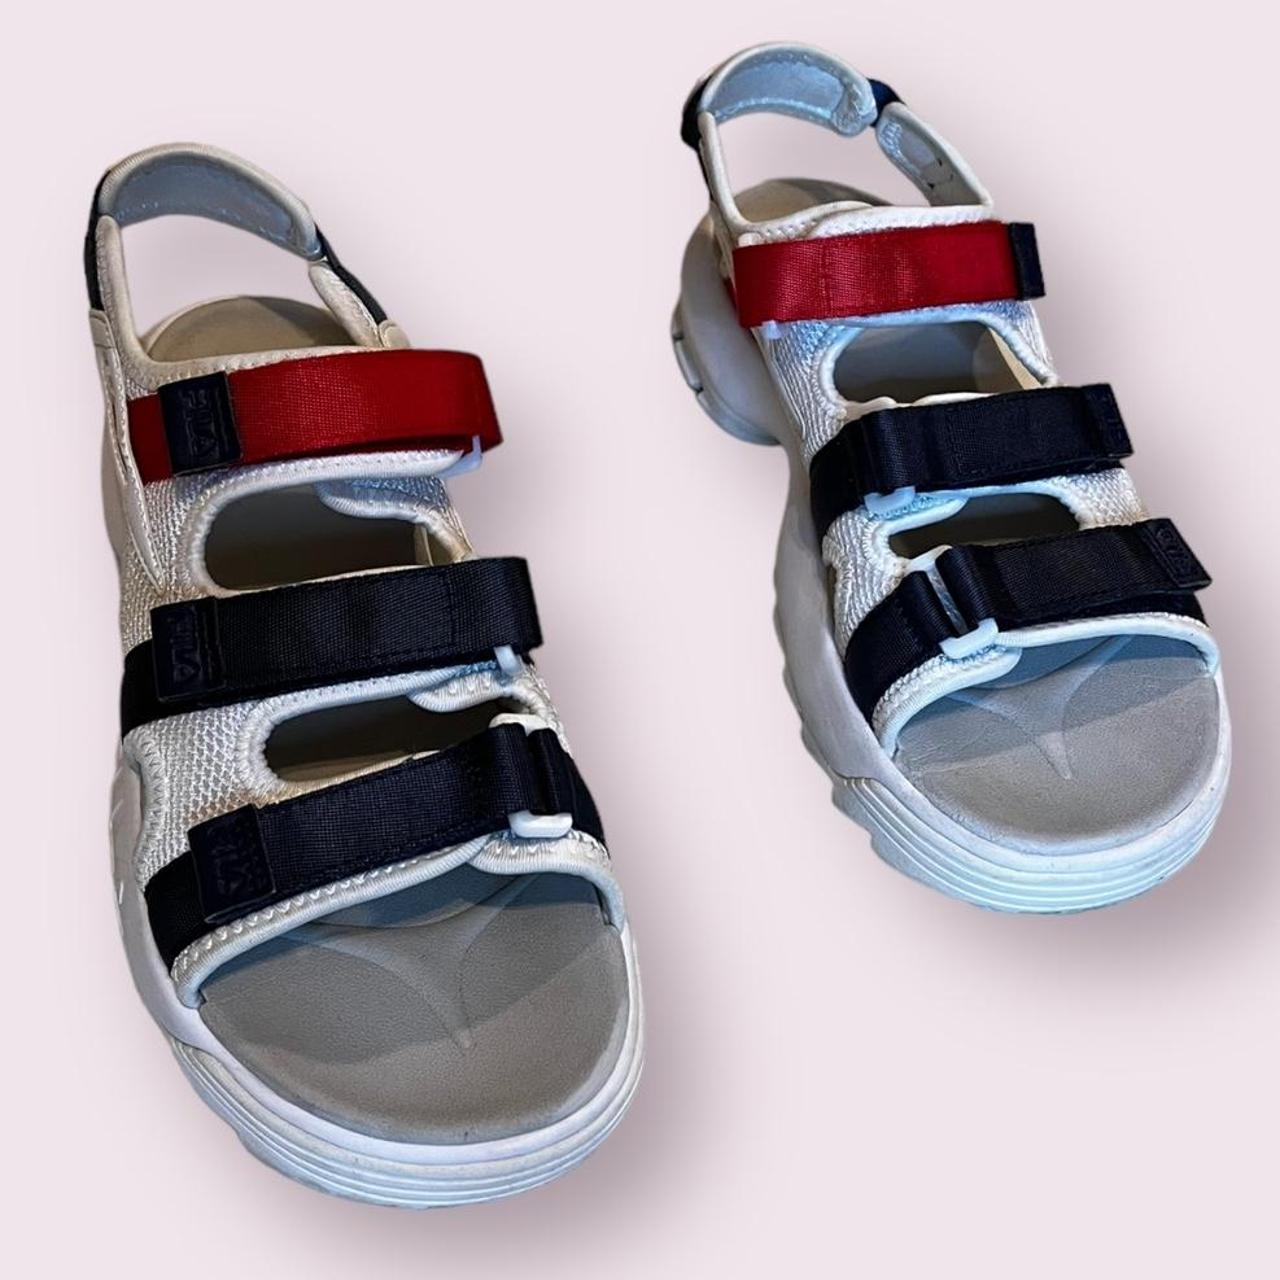 Buy FILA KEYSTAY Comfort Footwear Red Sandals online